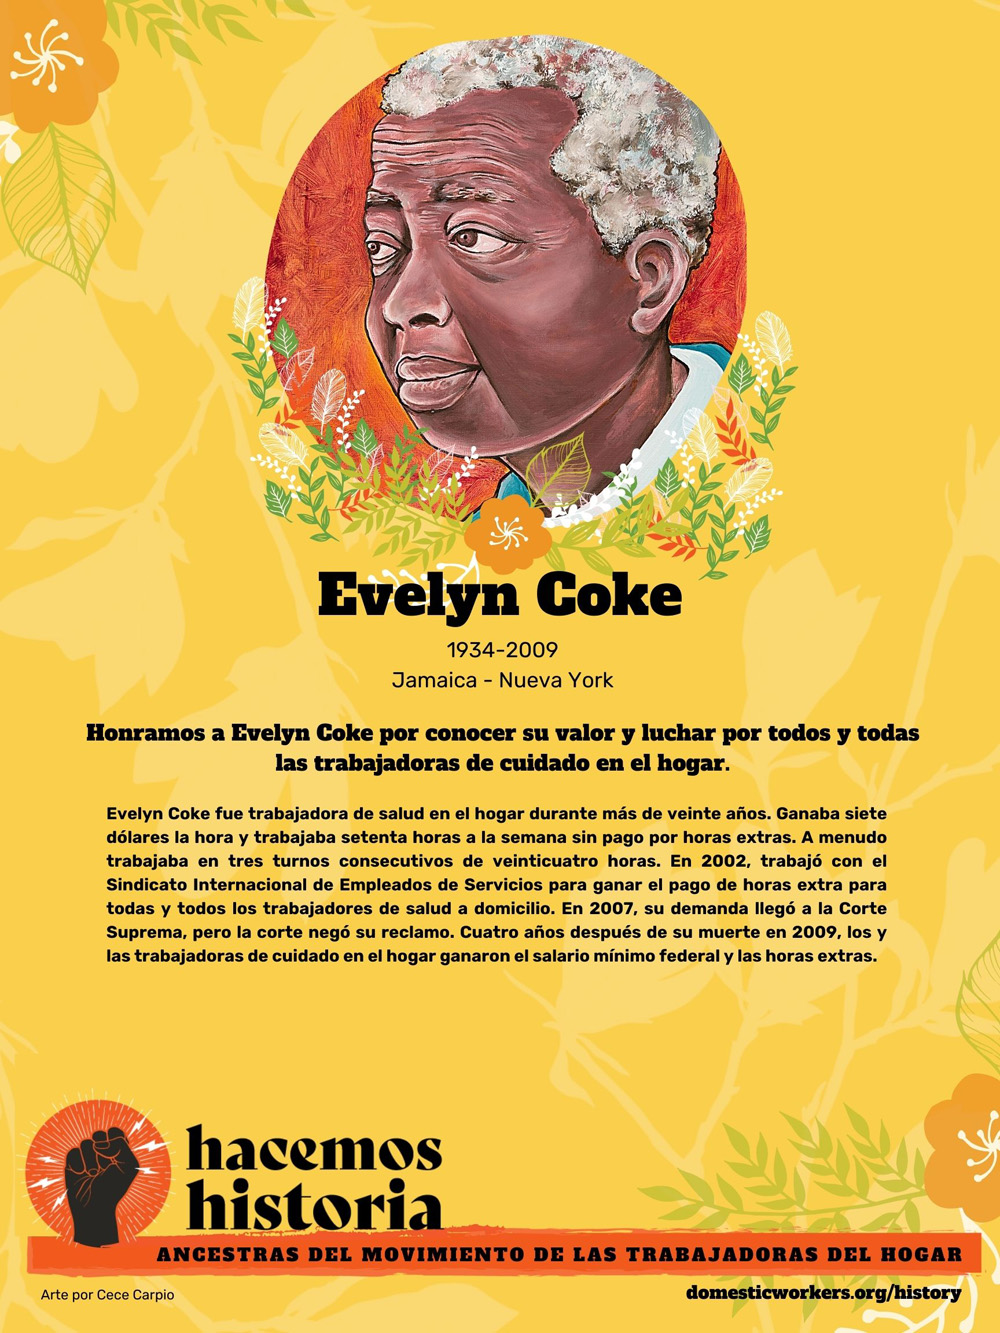 Retratos de las ancestras del movimiento de trabajadoras de hogar: Evelyn Coke